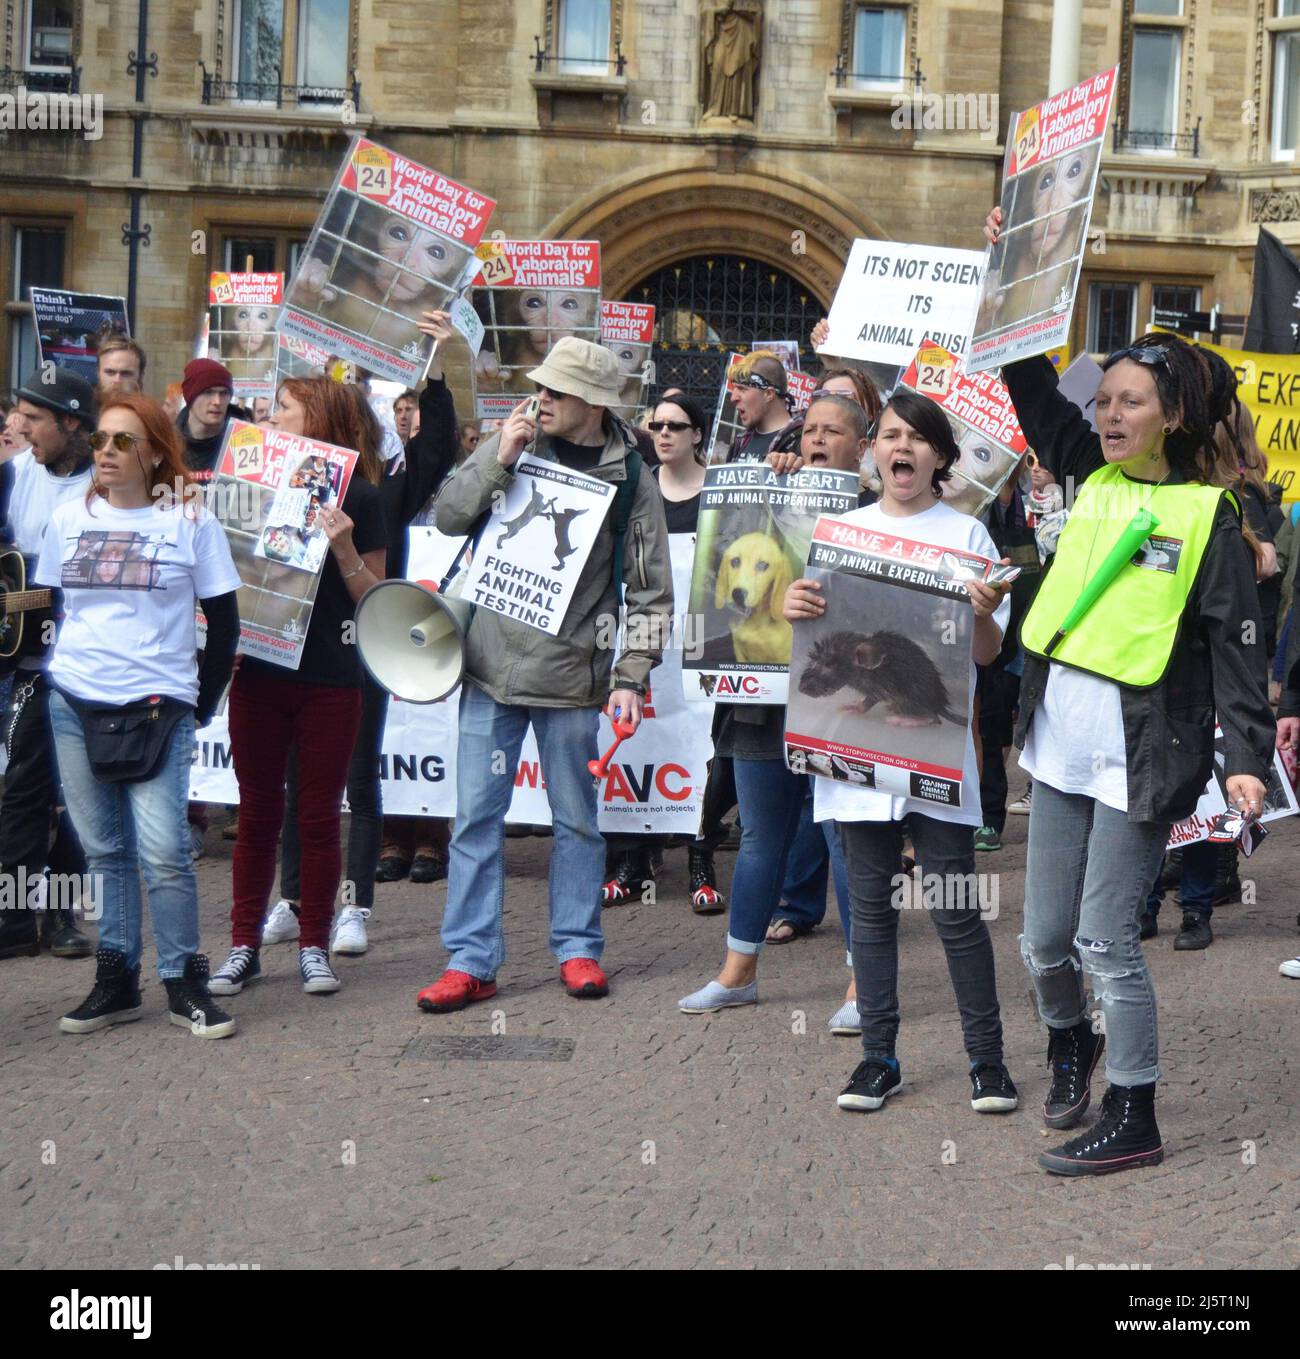 Welttag für Tiere in Laboratorien, Cambridge, Großbritannien, 25. 2015. April - Tierrechtsaktivisten protestieren in der Nähe der Universität Cambridge Stockfoto